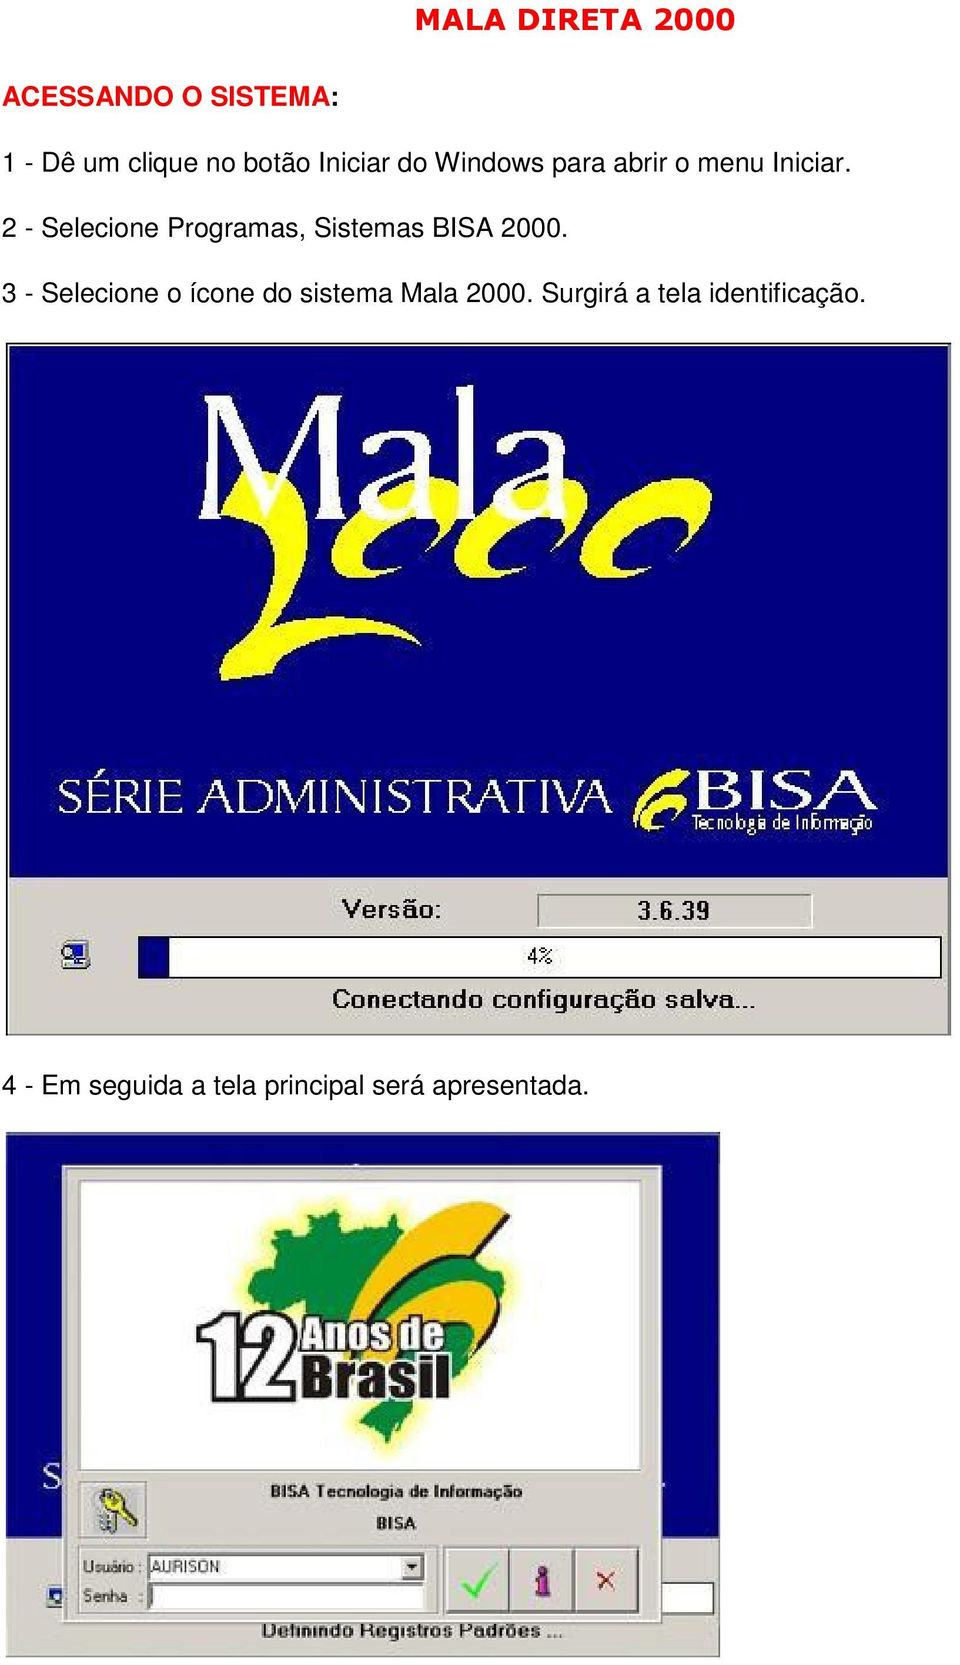 2 - Selecione Programas, Sistemas BISA 2000.